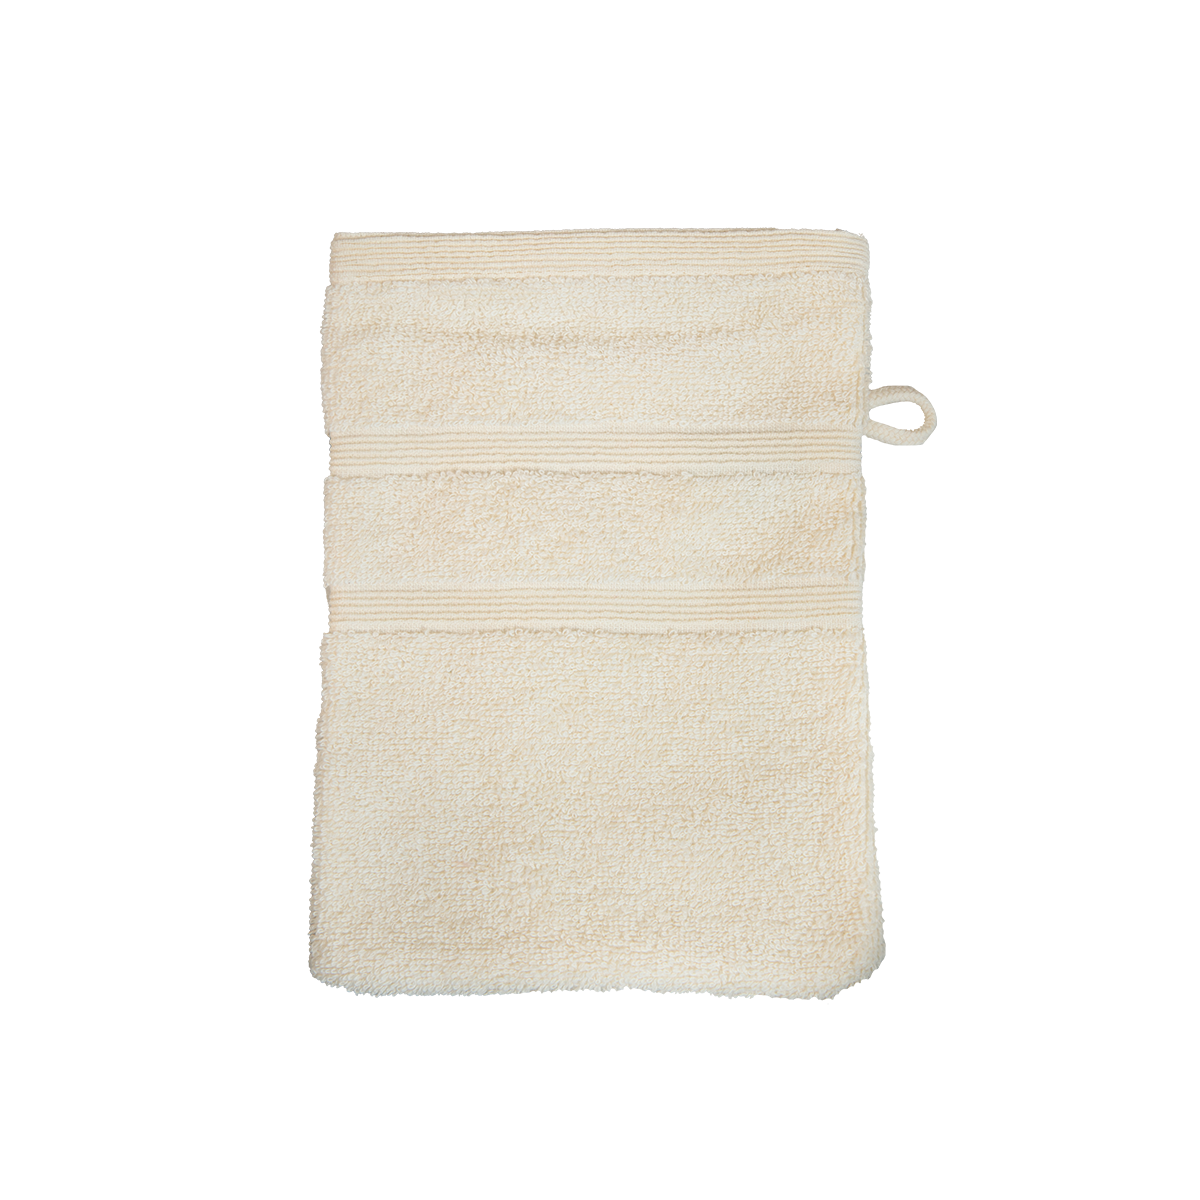 Bio Baumwoll Waschhandschuh, Größe 16 mal 21 cm in der Farbe Creme-Weiß